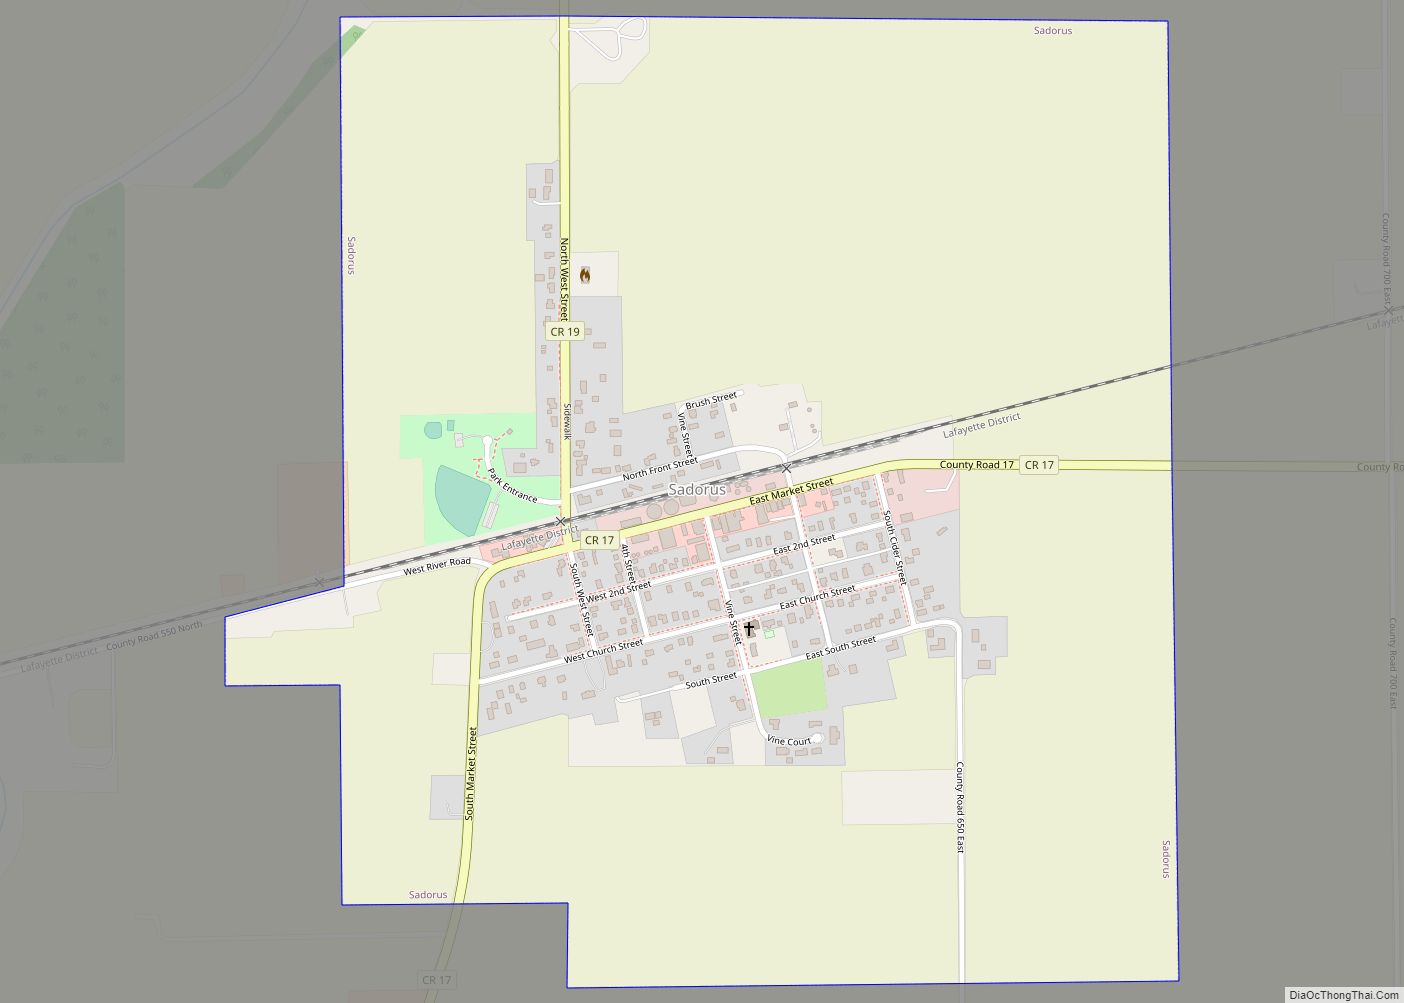 Map of Sadorus village